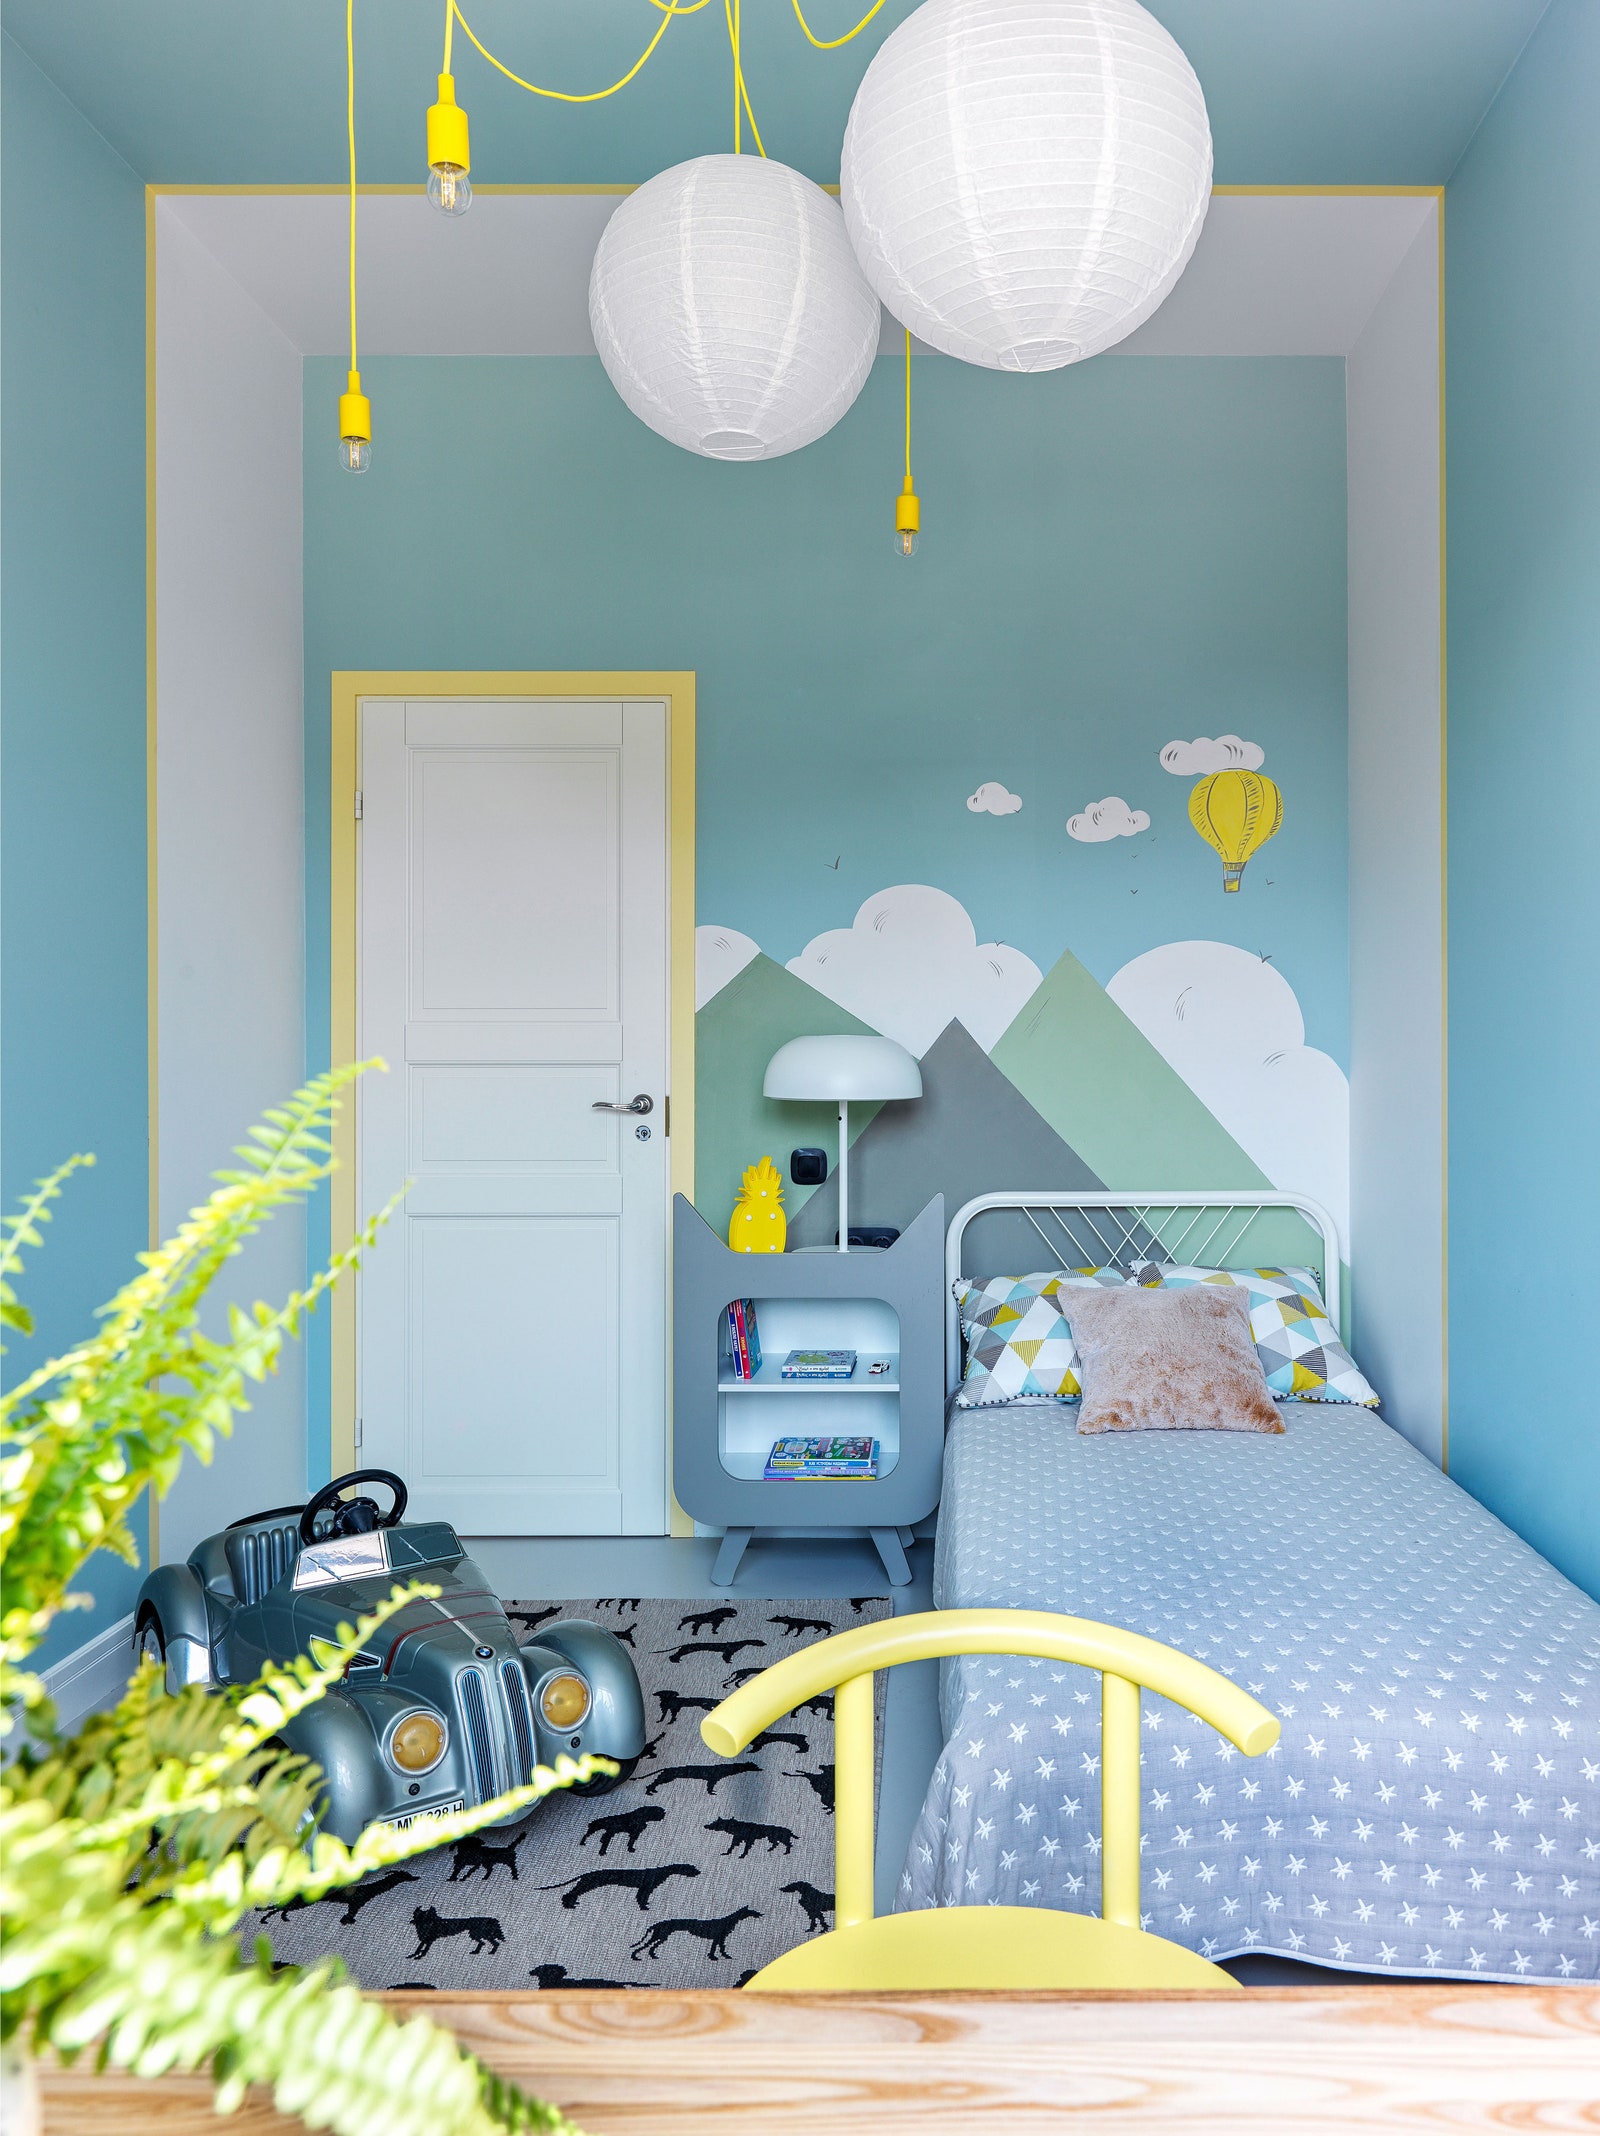 Комната младшего сына. Кровать IKEA покрывало Villa Nova тумба My Little Street стул Unika Møblär циновка “Ами Ковры”...